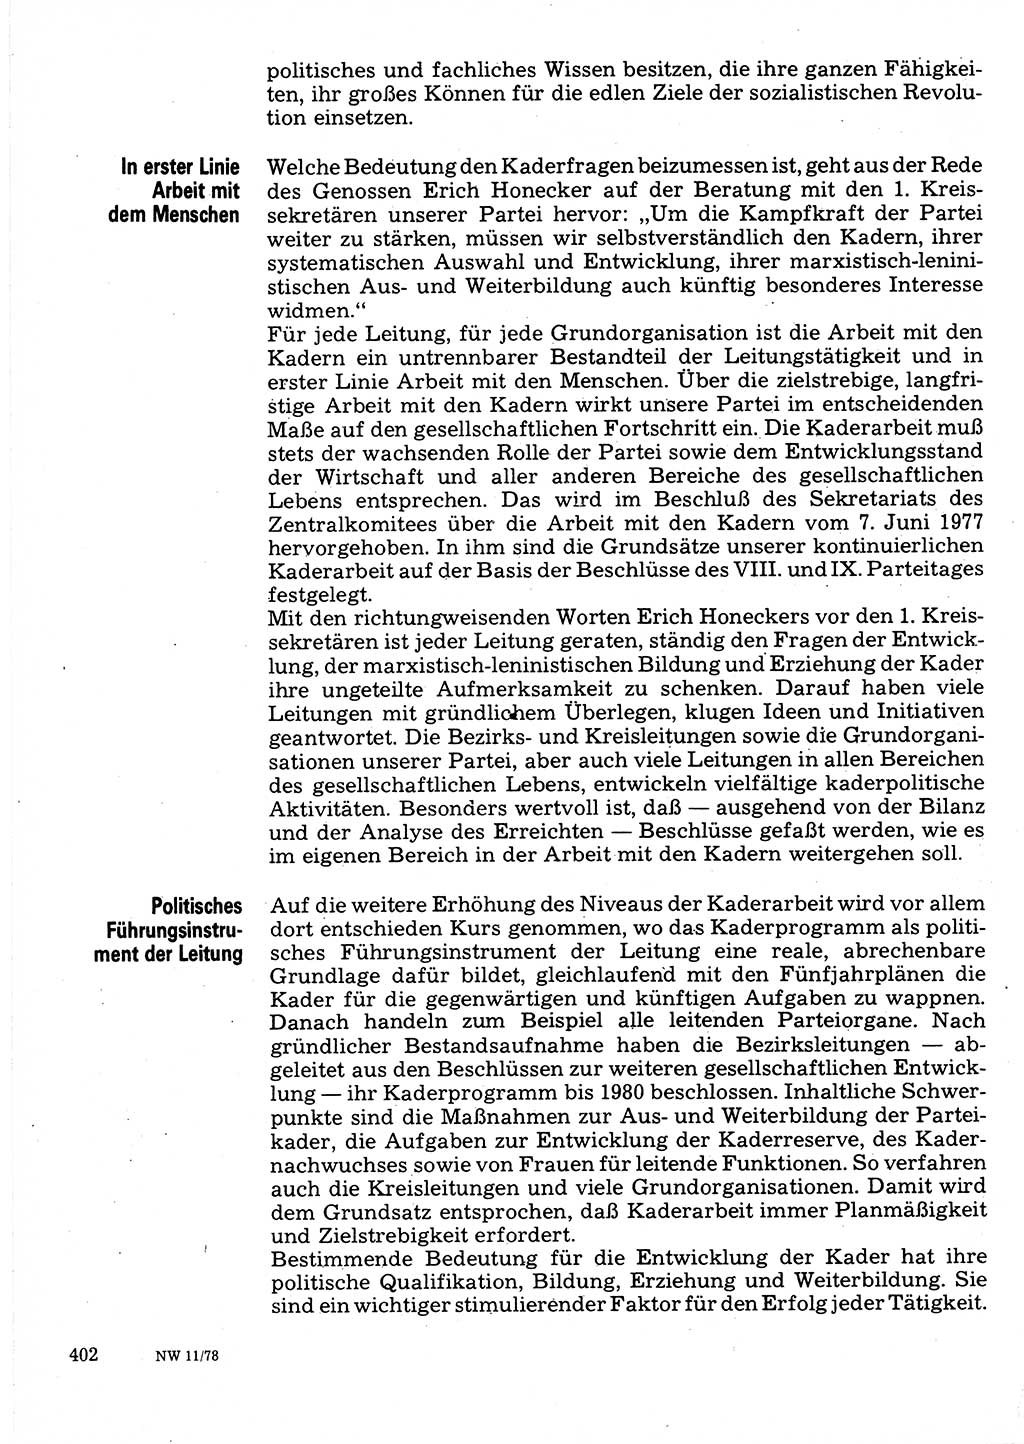 Neuer Weg (NW), Organ des Zentralkomitees (ZK) der SED (Sozialistische Einheitspartei Deutschlands) für Fragen des Parteilebens, 33. Jahrgang [Deutsche Demokratische Republik (DDR)] 1978, Seite 402 (NW ZK SED DDR 1978, S. 402)